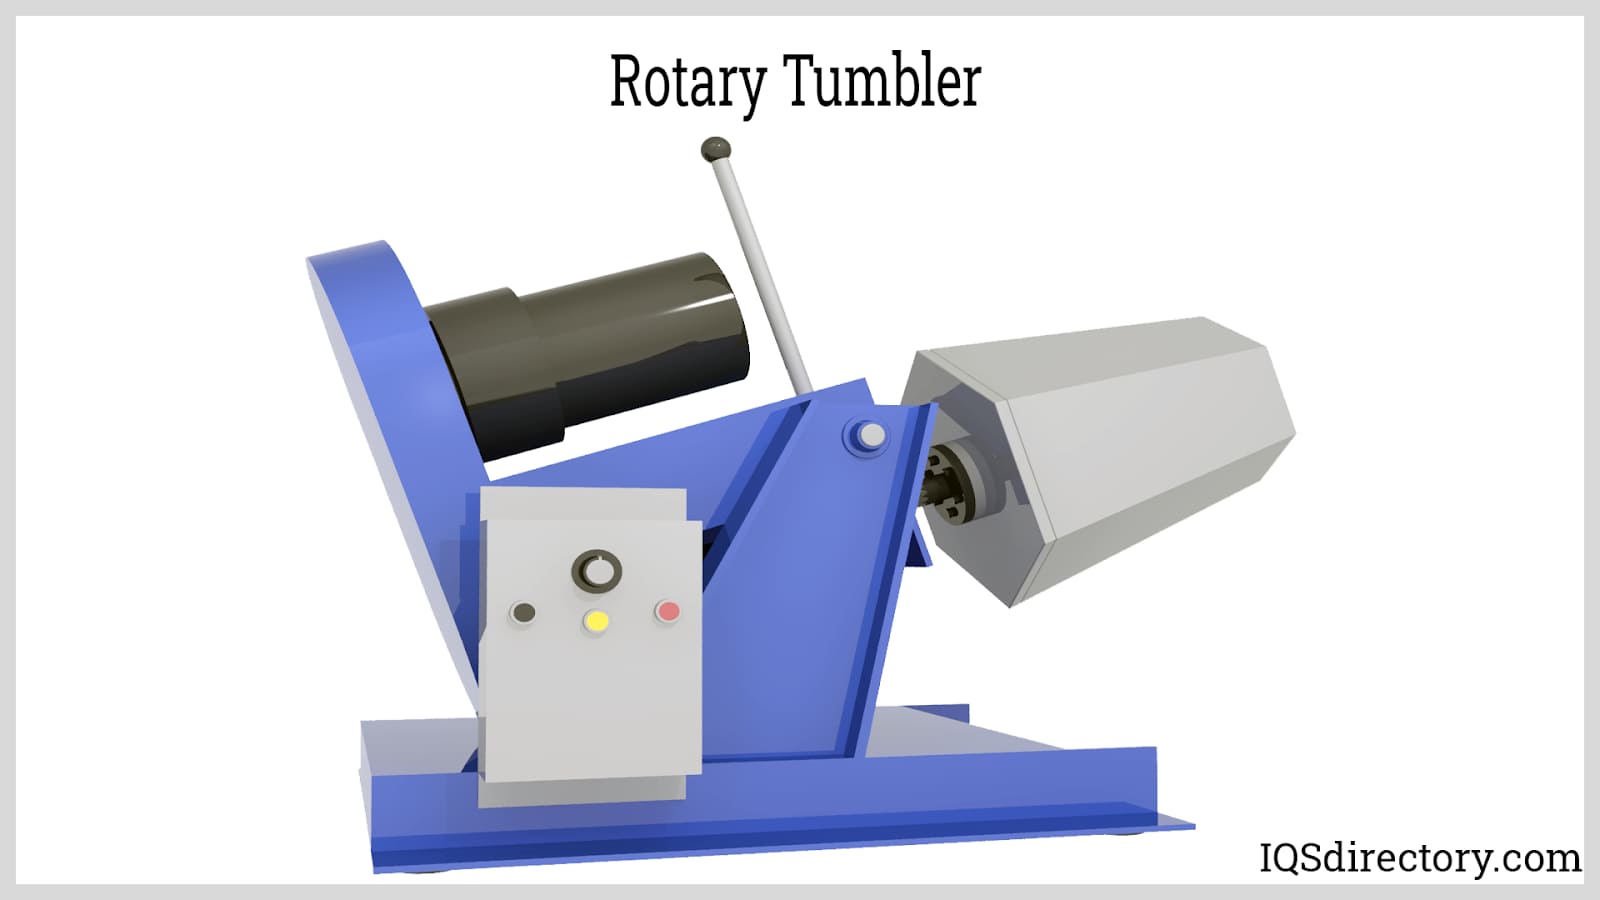 Rotary Tumbler